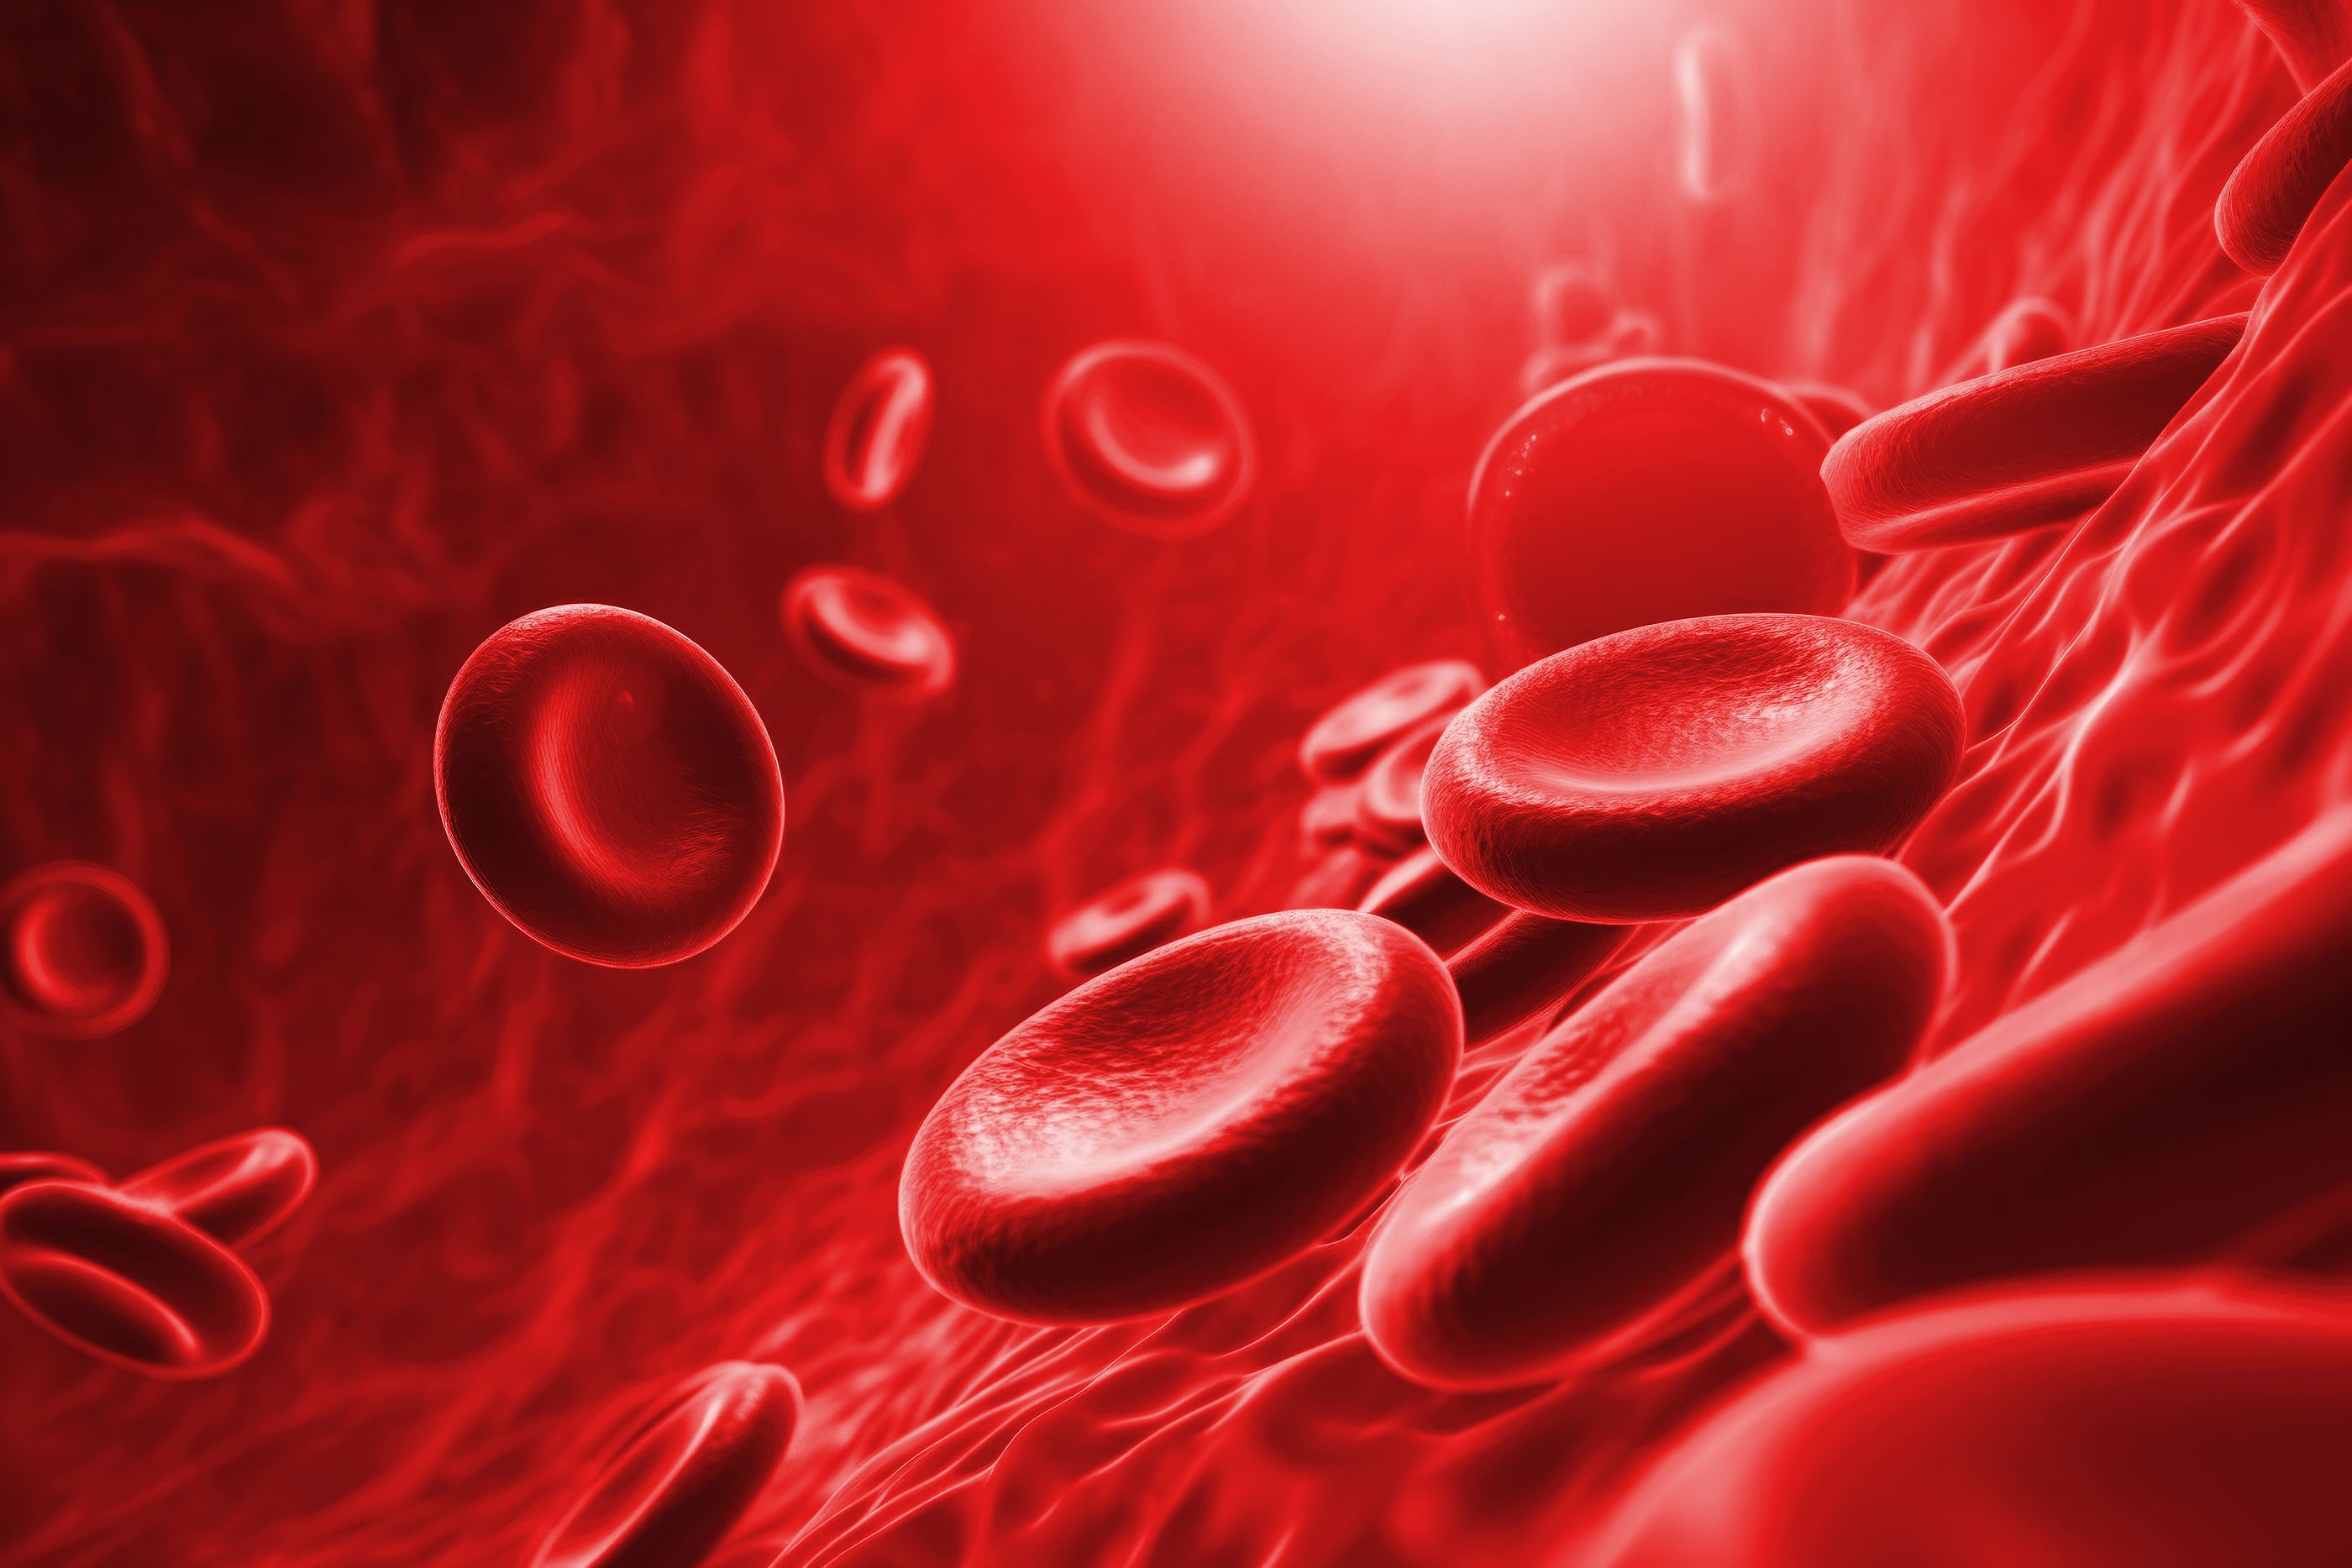 Identifican biomarcadores en la sangre para predecir precozmente el deterioro cognitivo en mayores